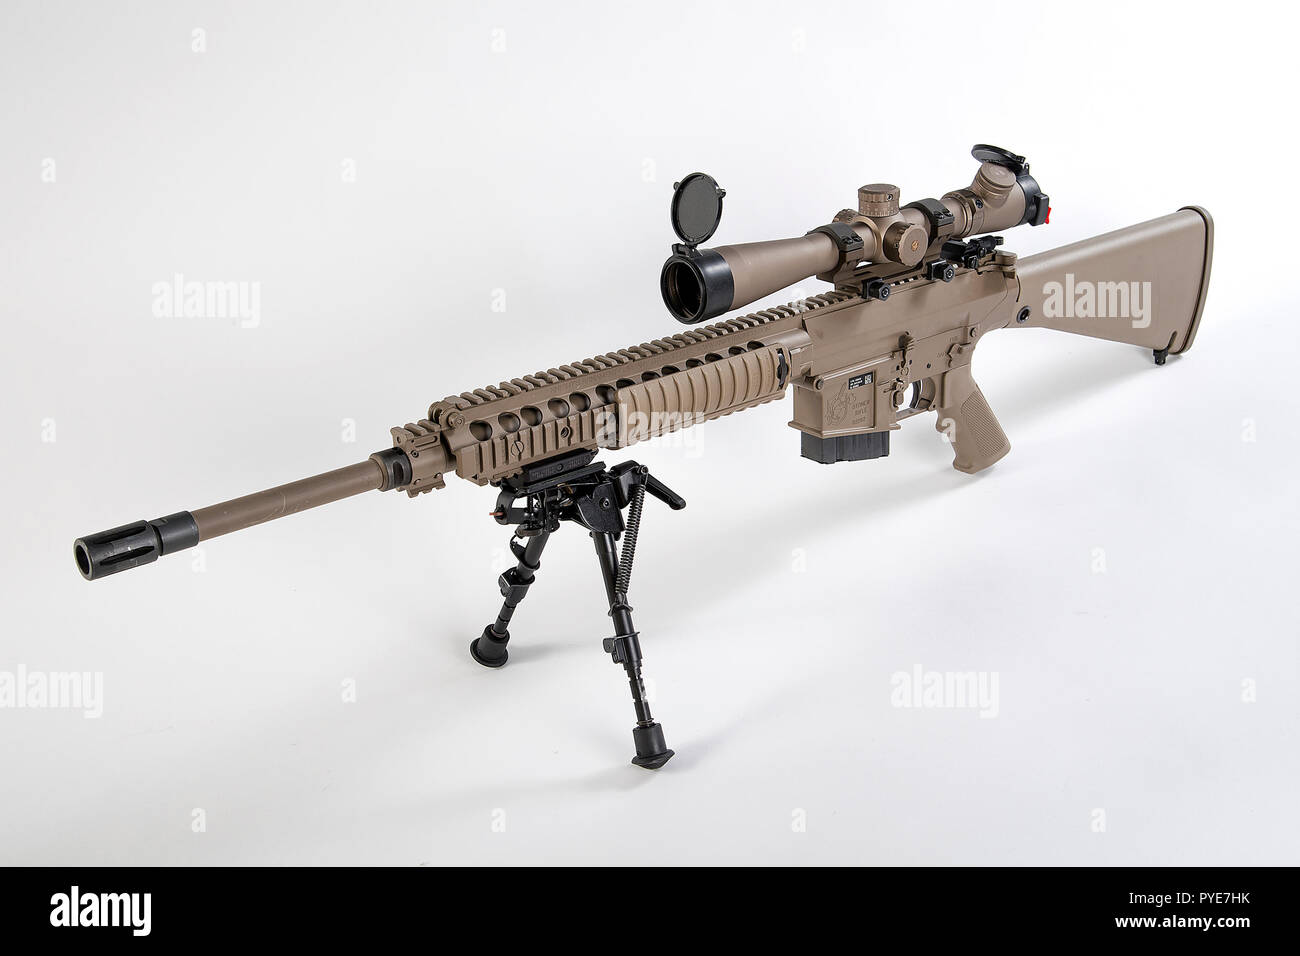 Die M110 Halbautomatische Sniper System M110 Sass Ist Eine Us Amerikanische Halbautomatische Scharfschutzengewehr Designated Marksman Rifle